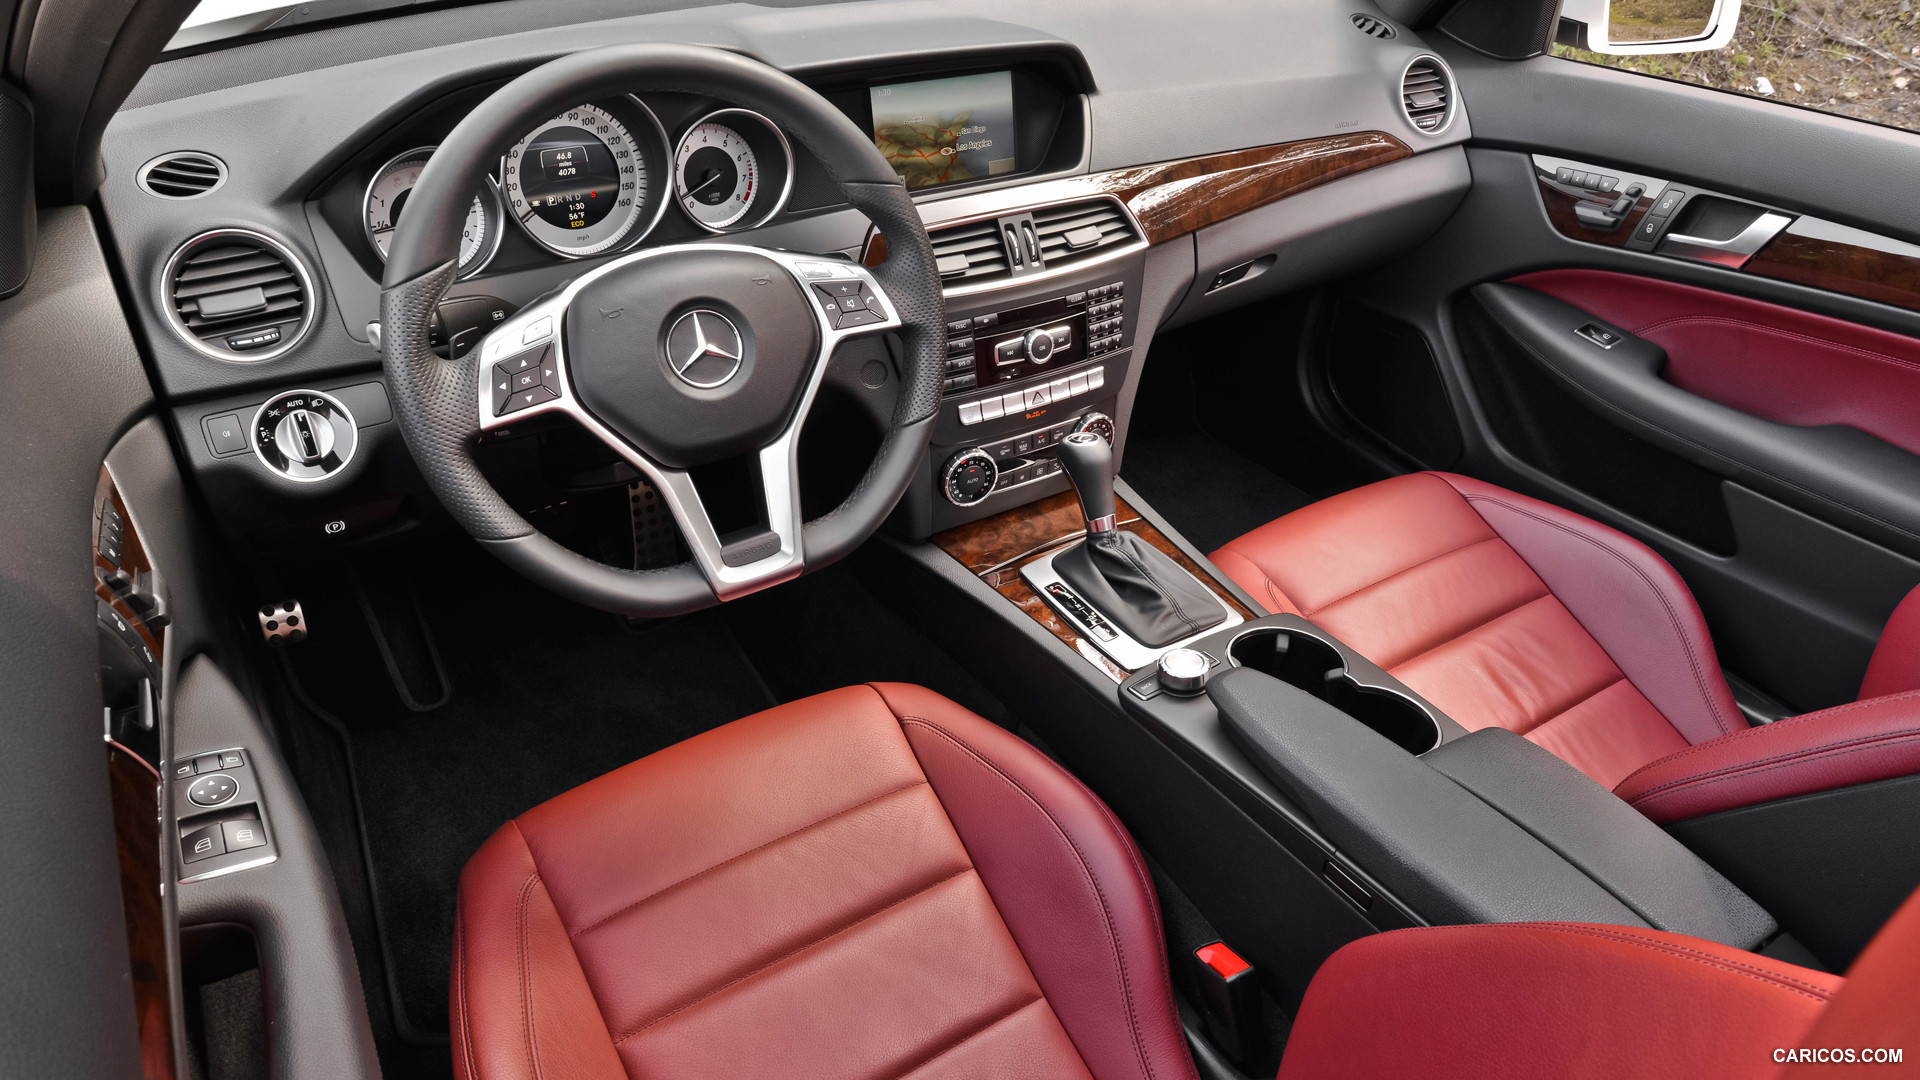 2013 Mercedes Benz C350 Coupe Interior Hd Wallpaper 37